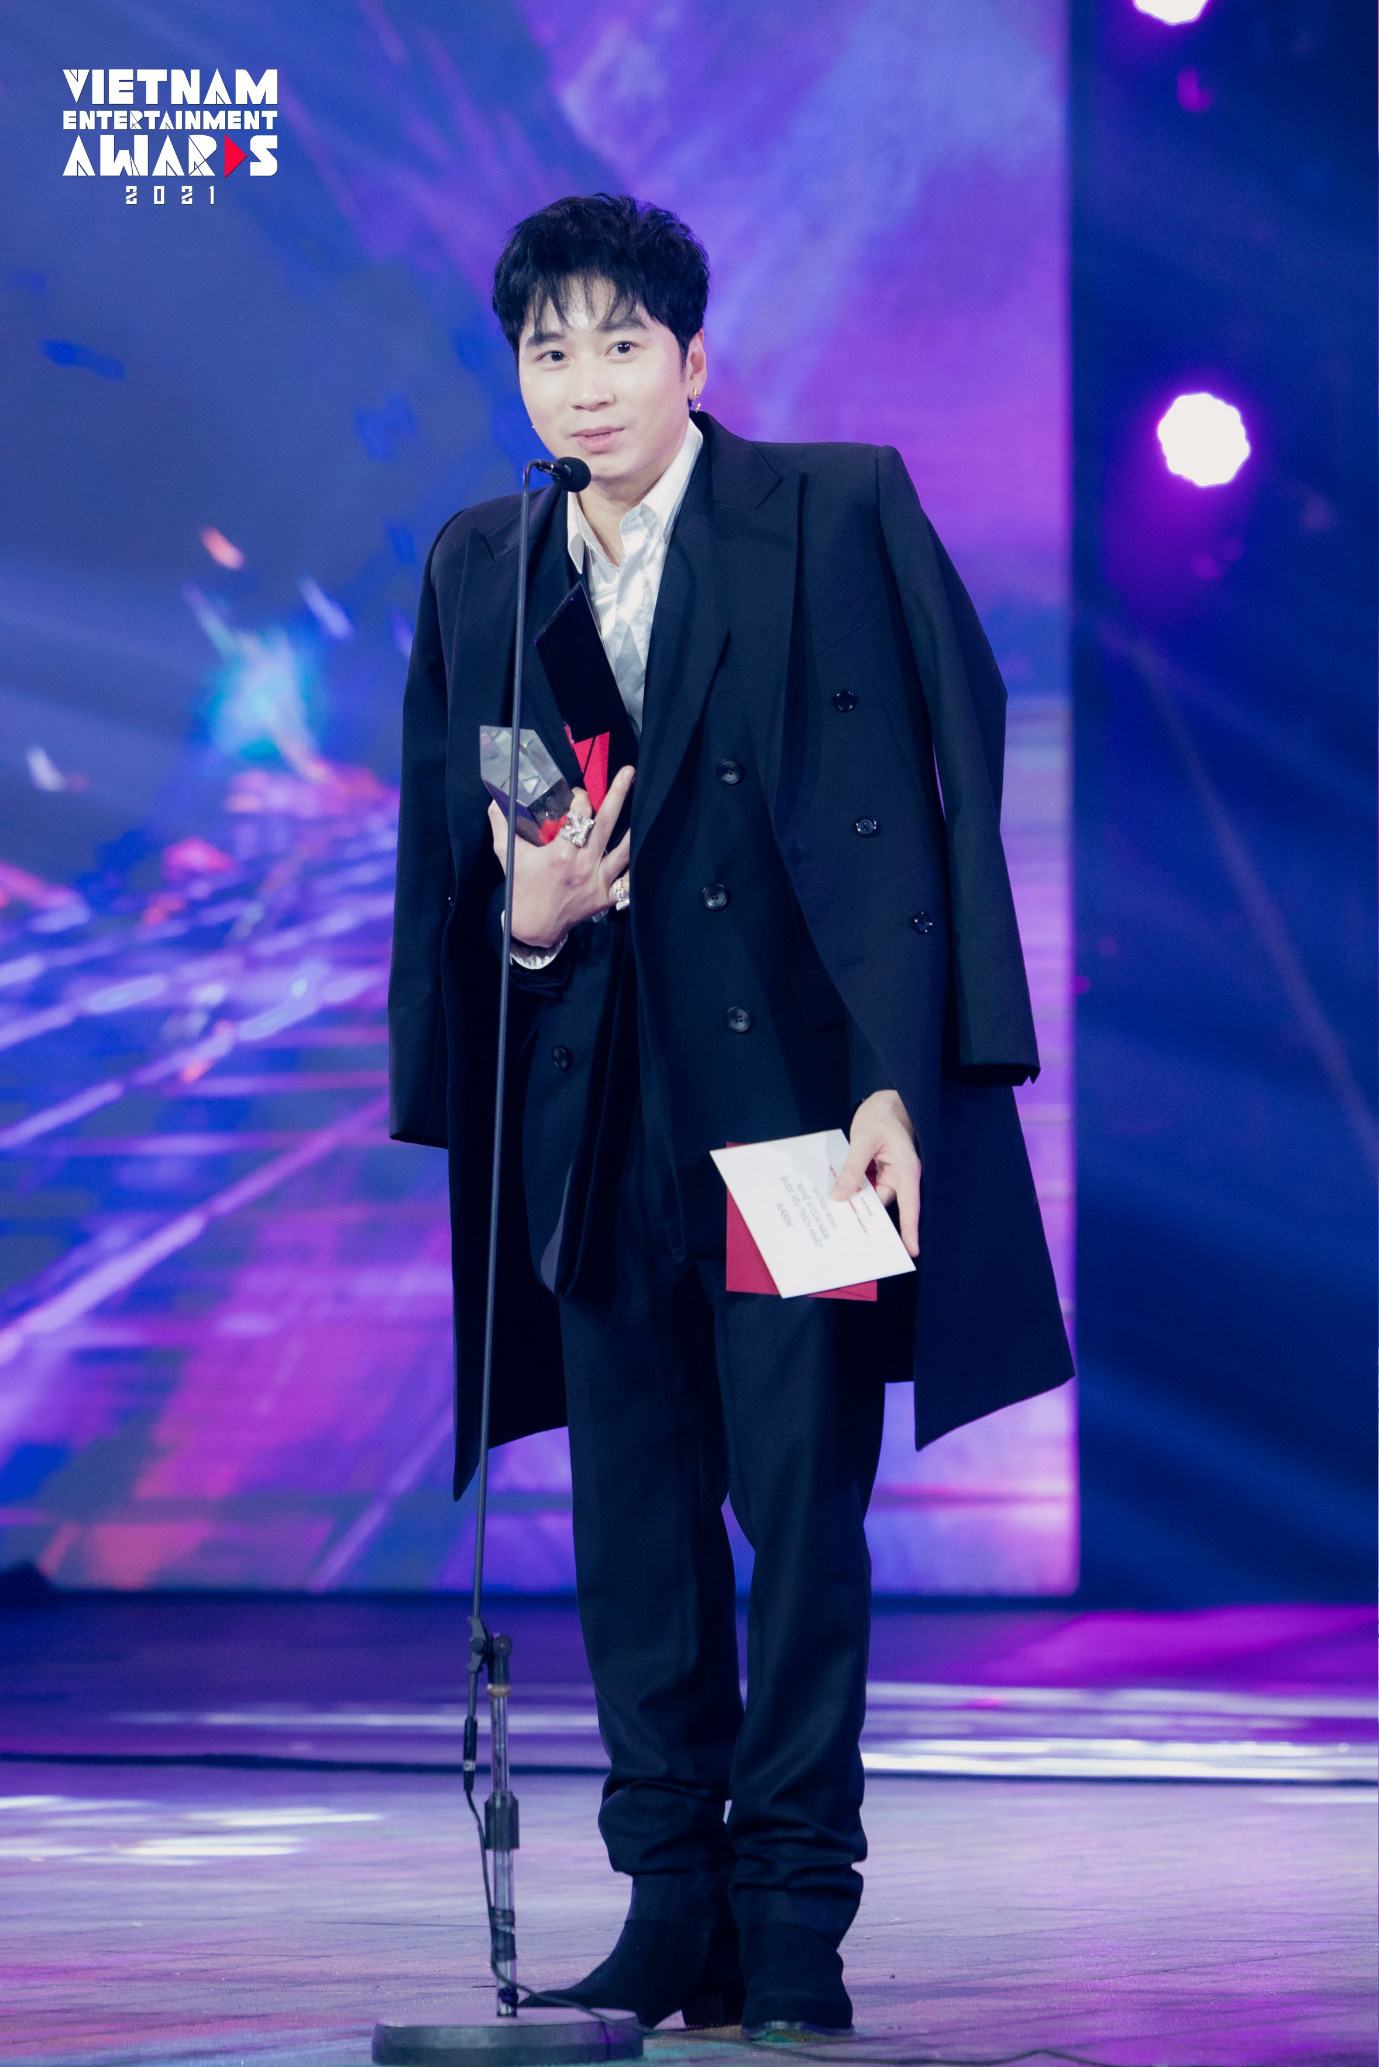 Đêm Gala Trao Giải sự kiện Vietnam Entertainment Awards 2021 - nơi những tài năng được tôn vinh - Ảnh 8.